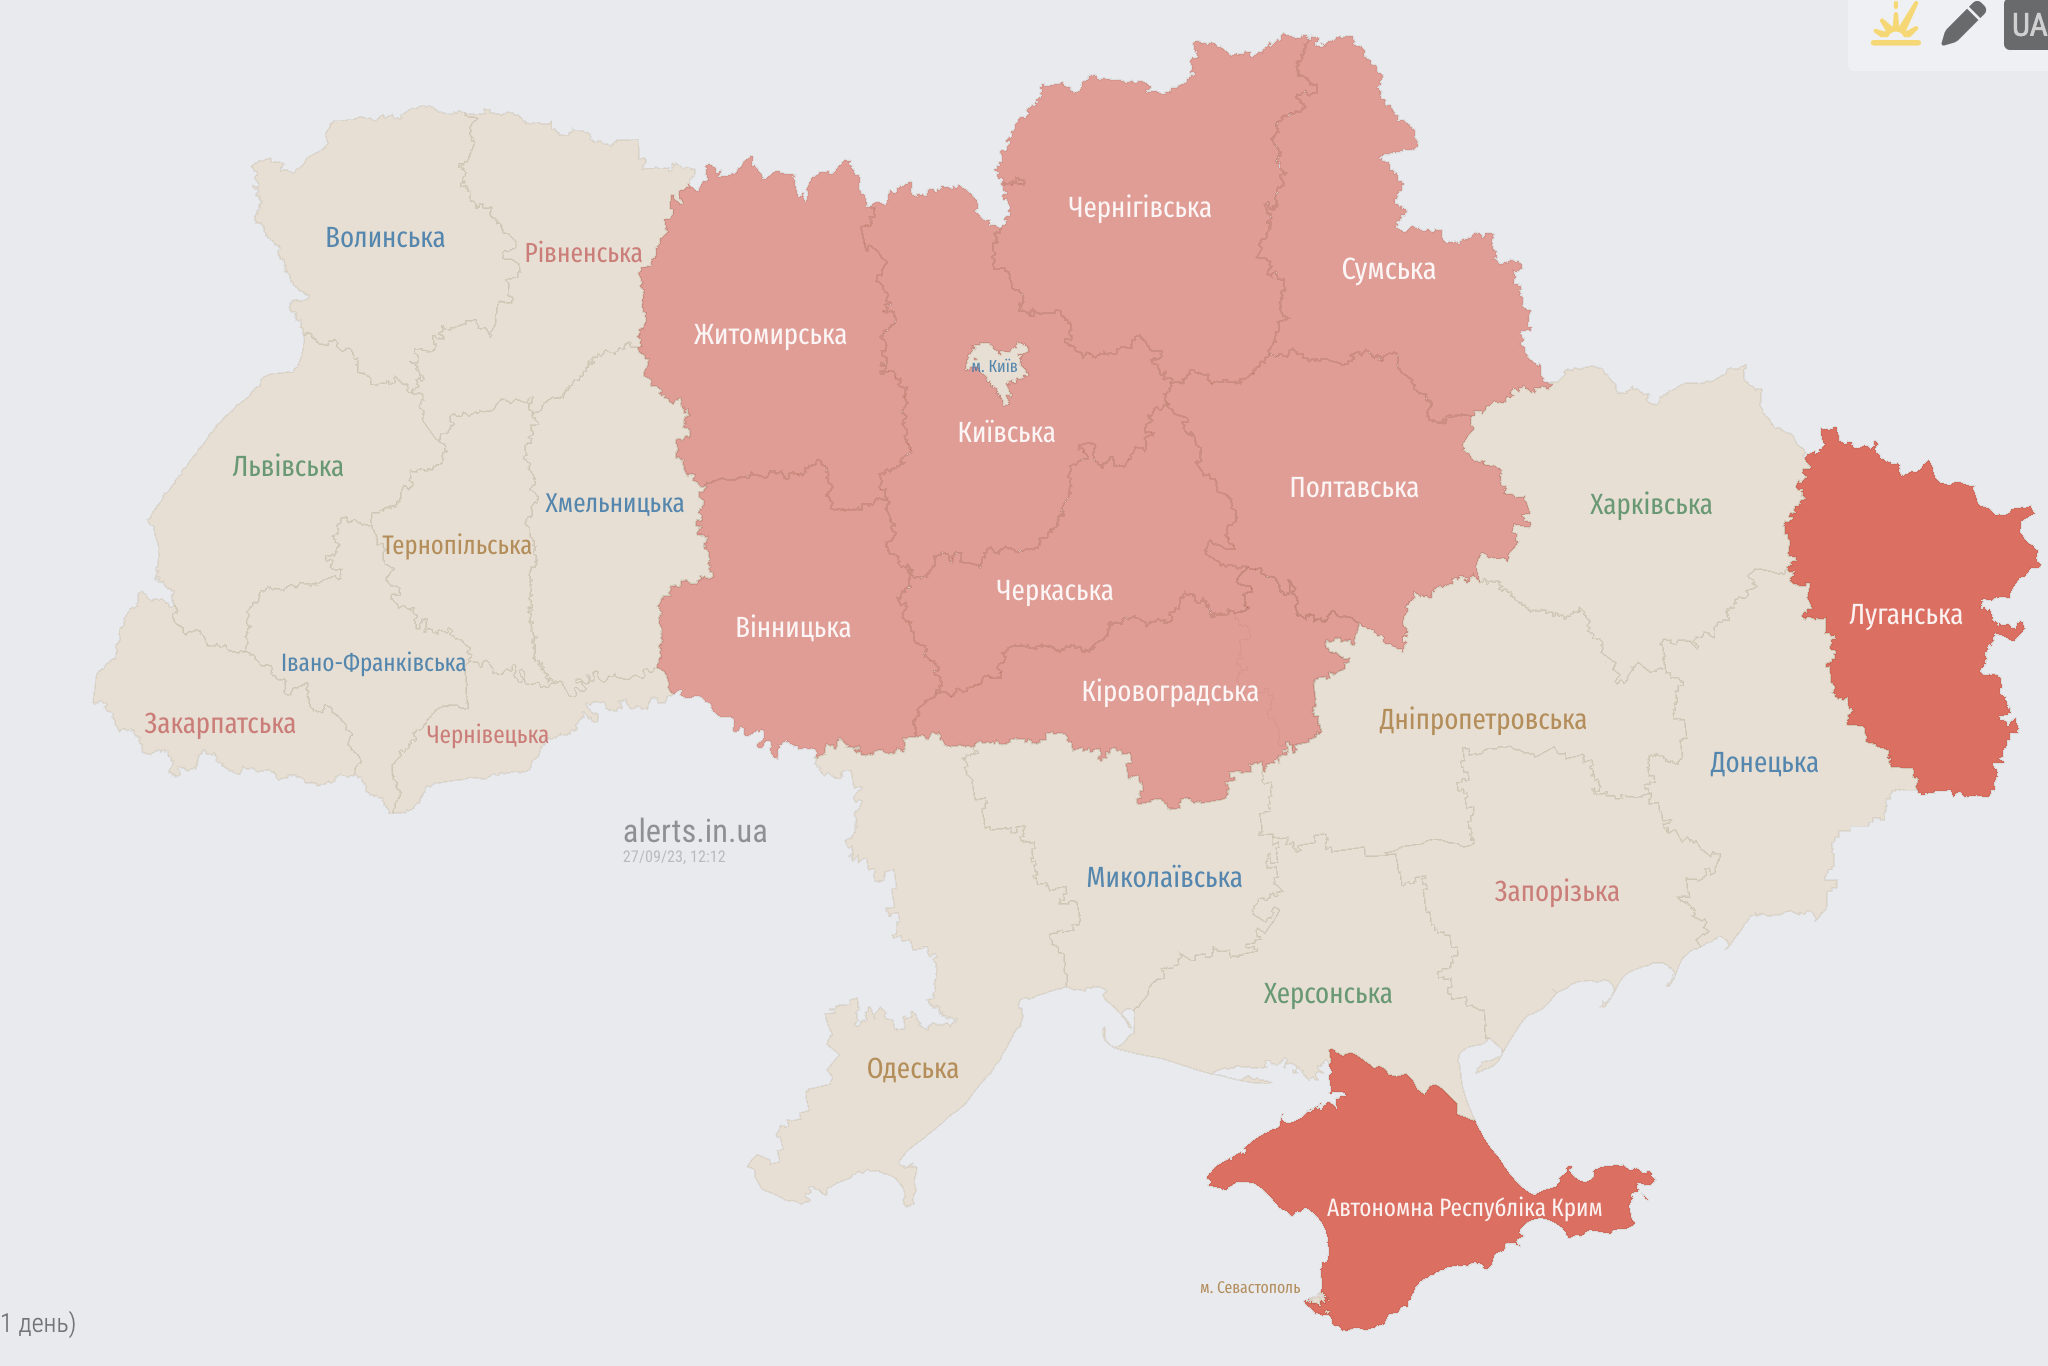 Брянская область карта россии и украины